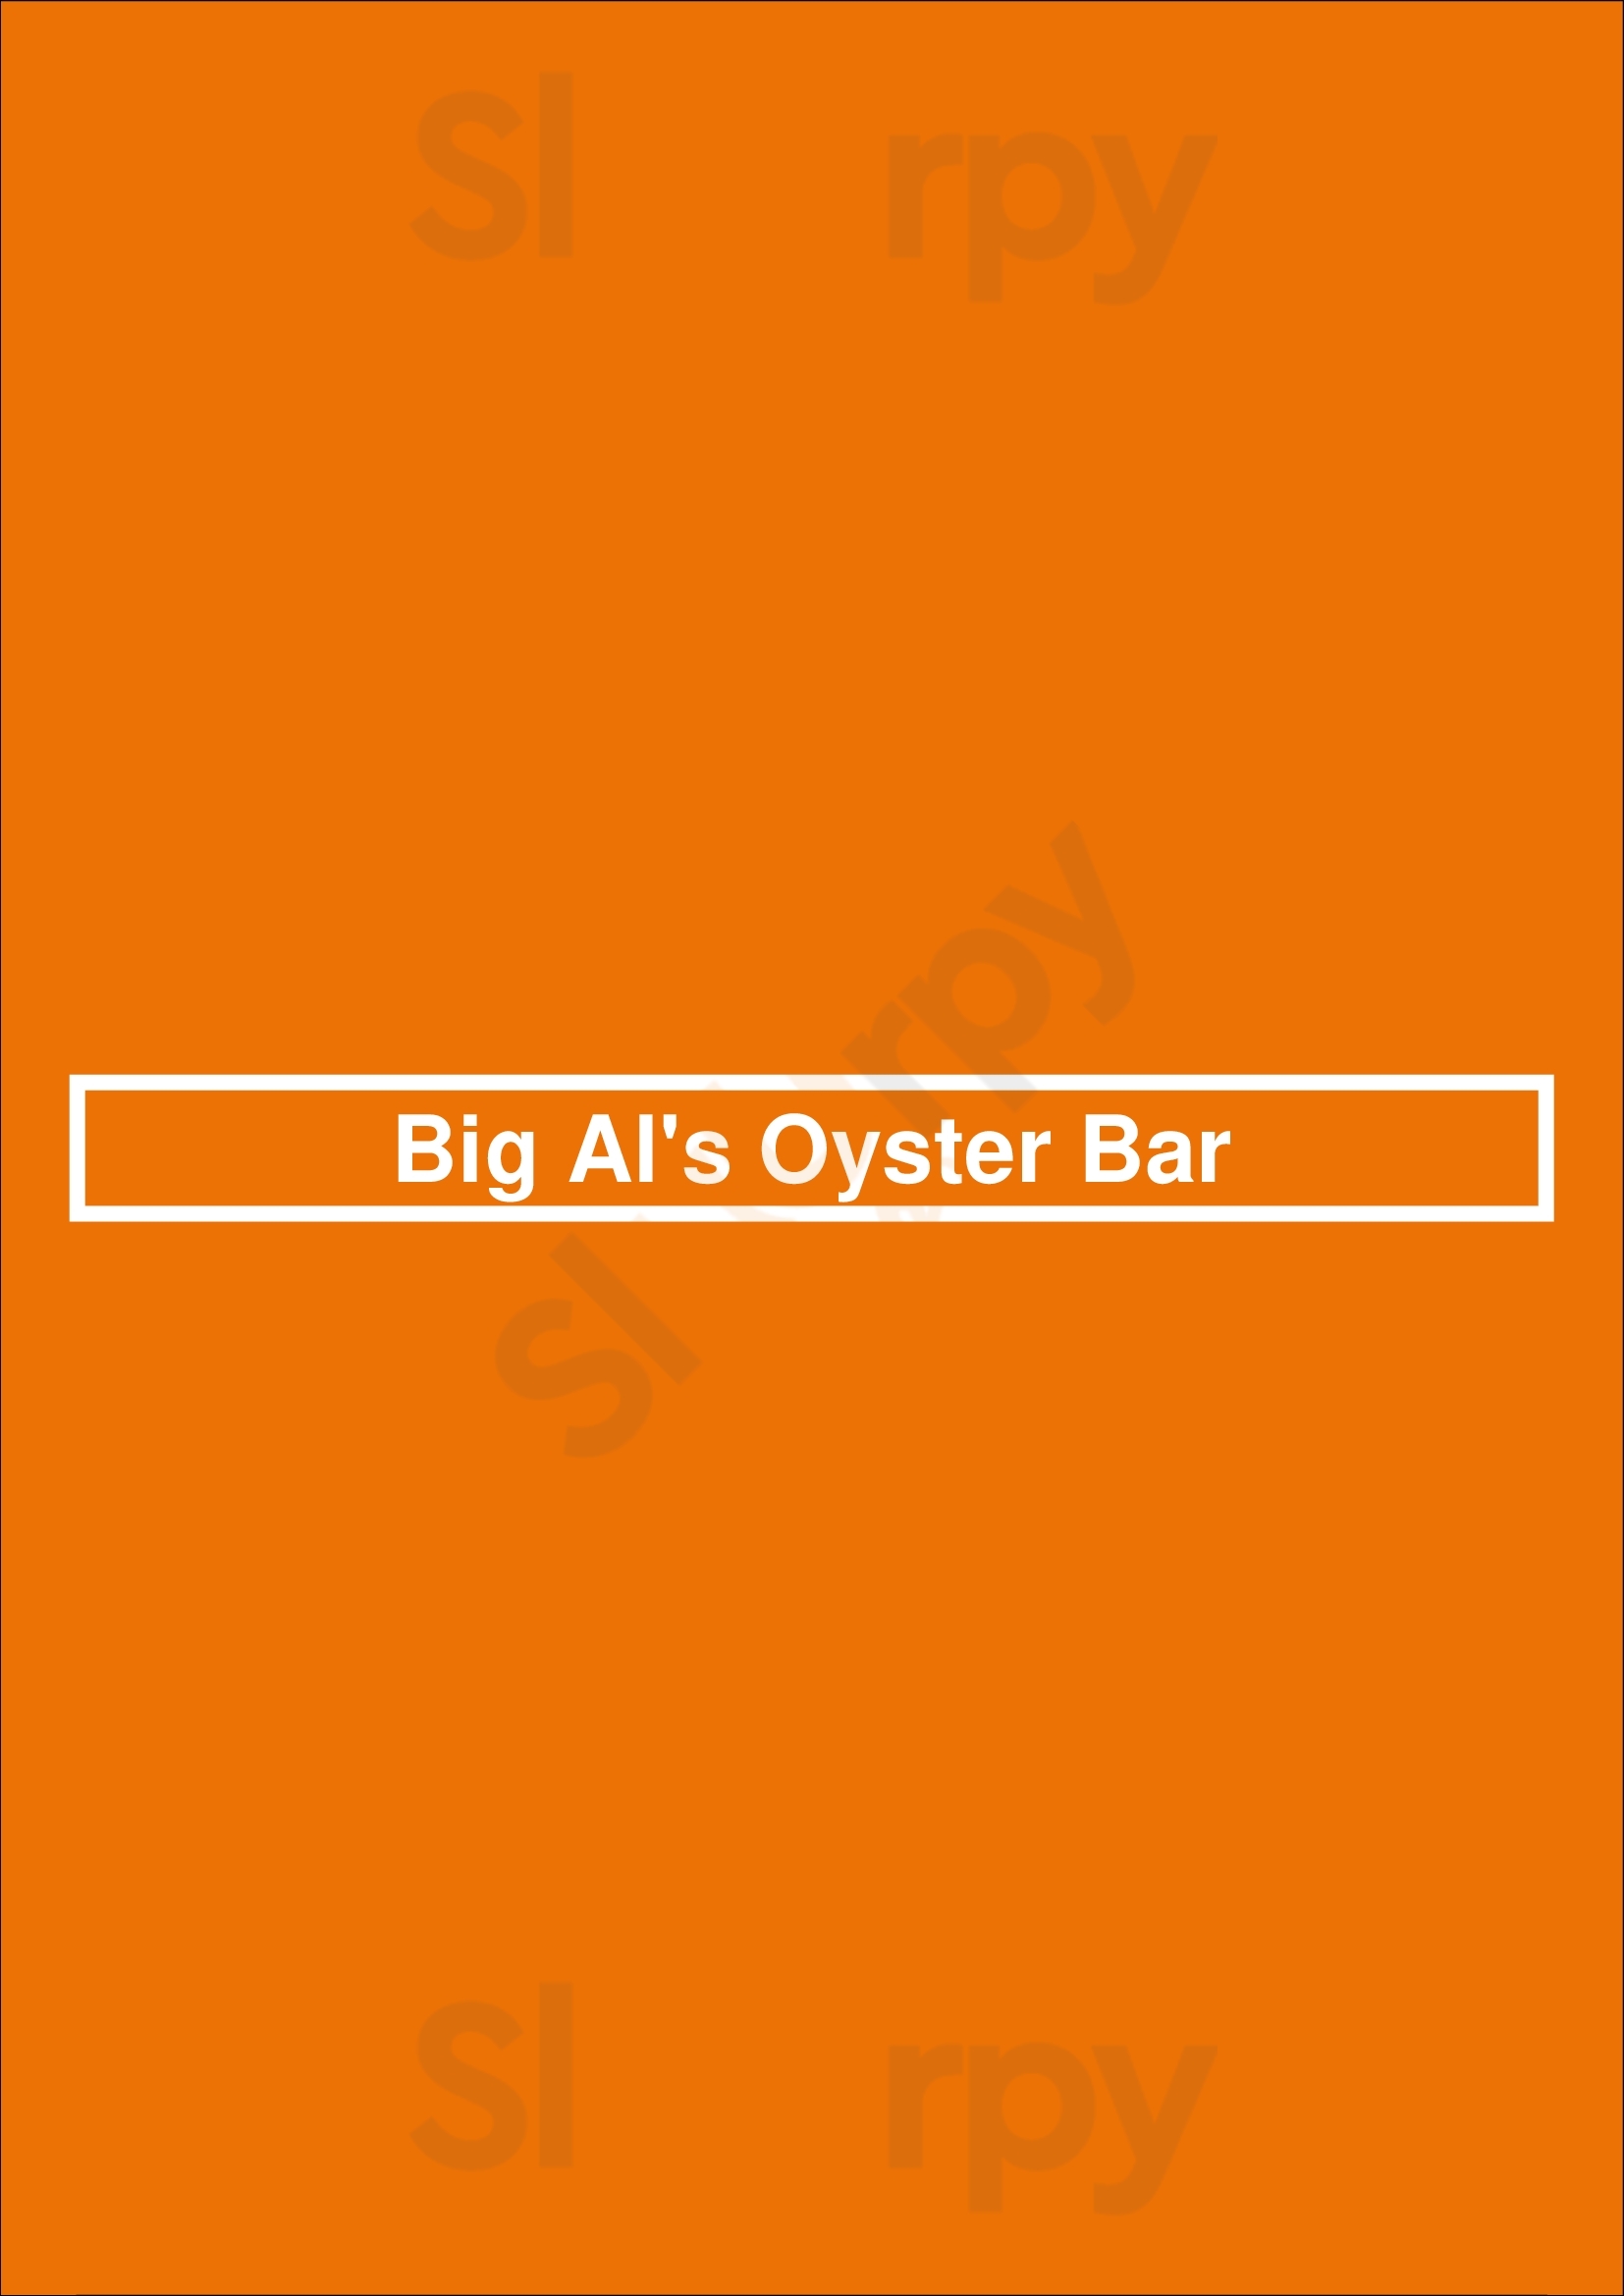 Big Al's Oyster Bar Las Vegas Menu - 1